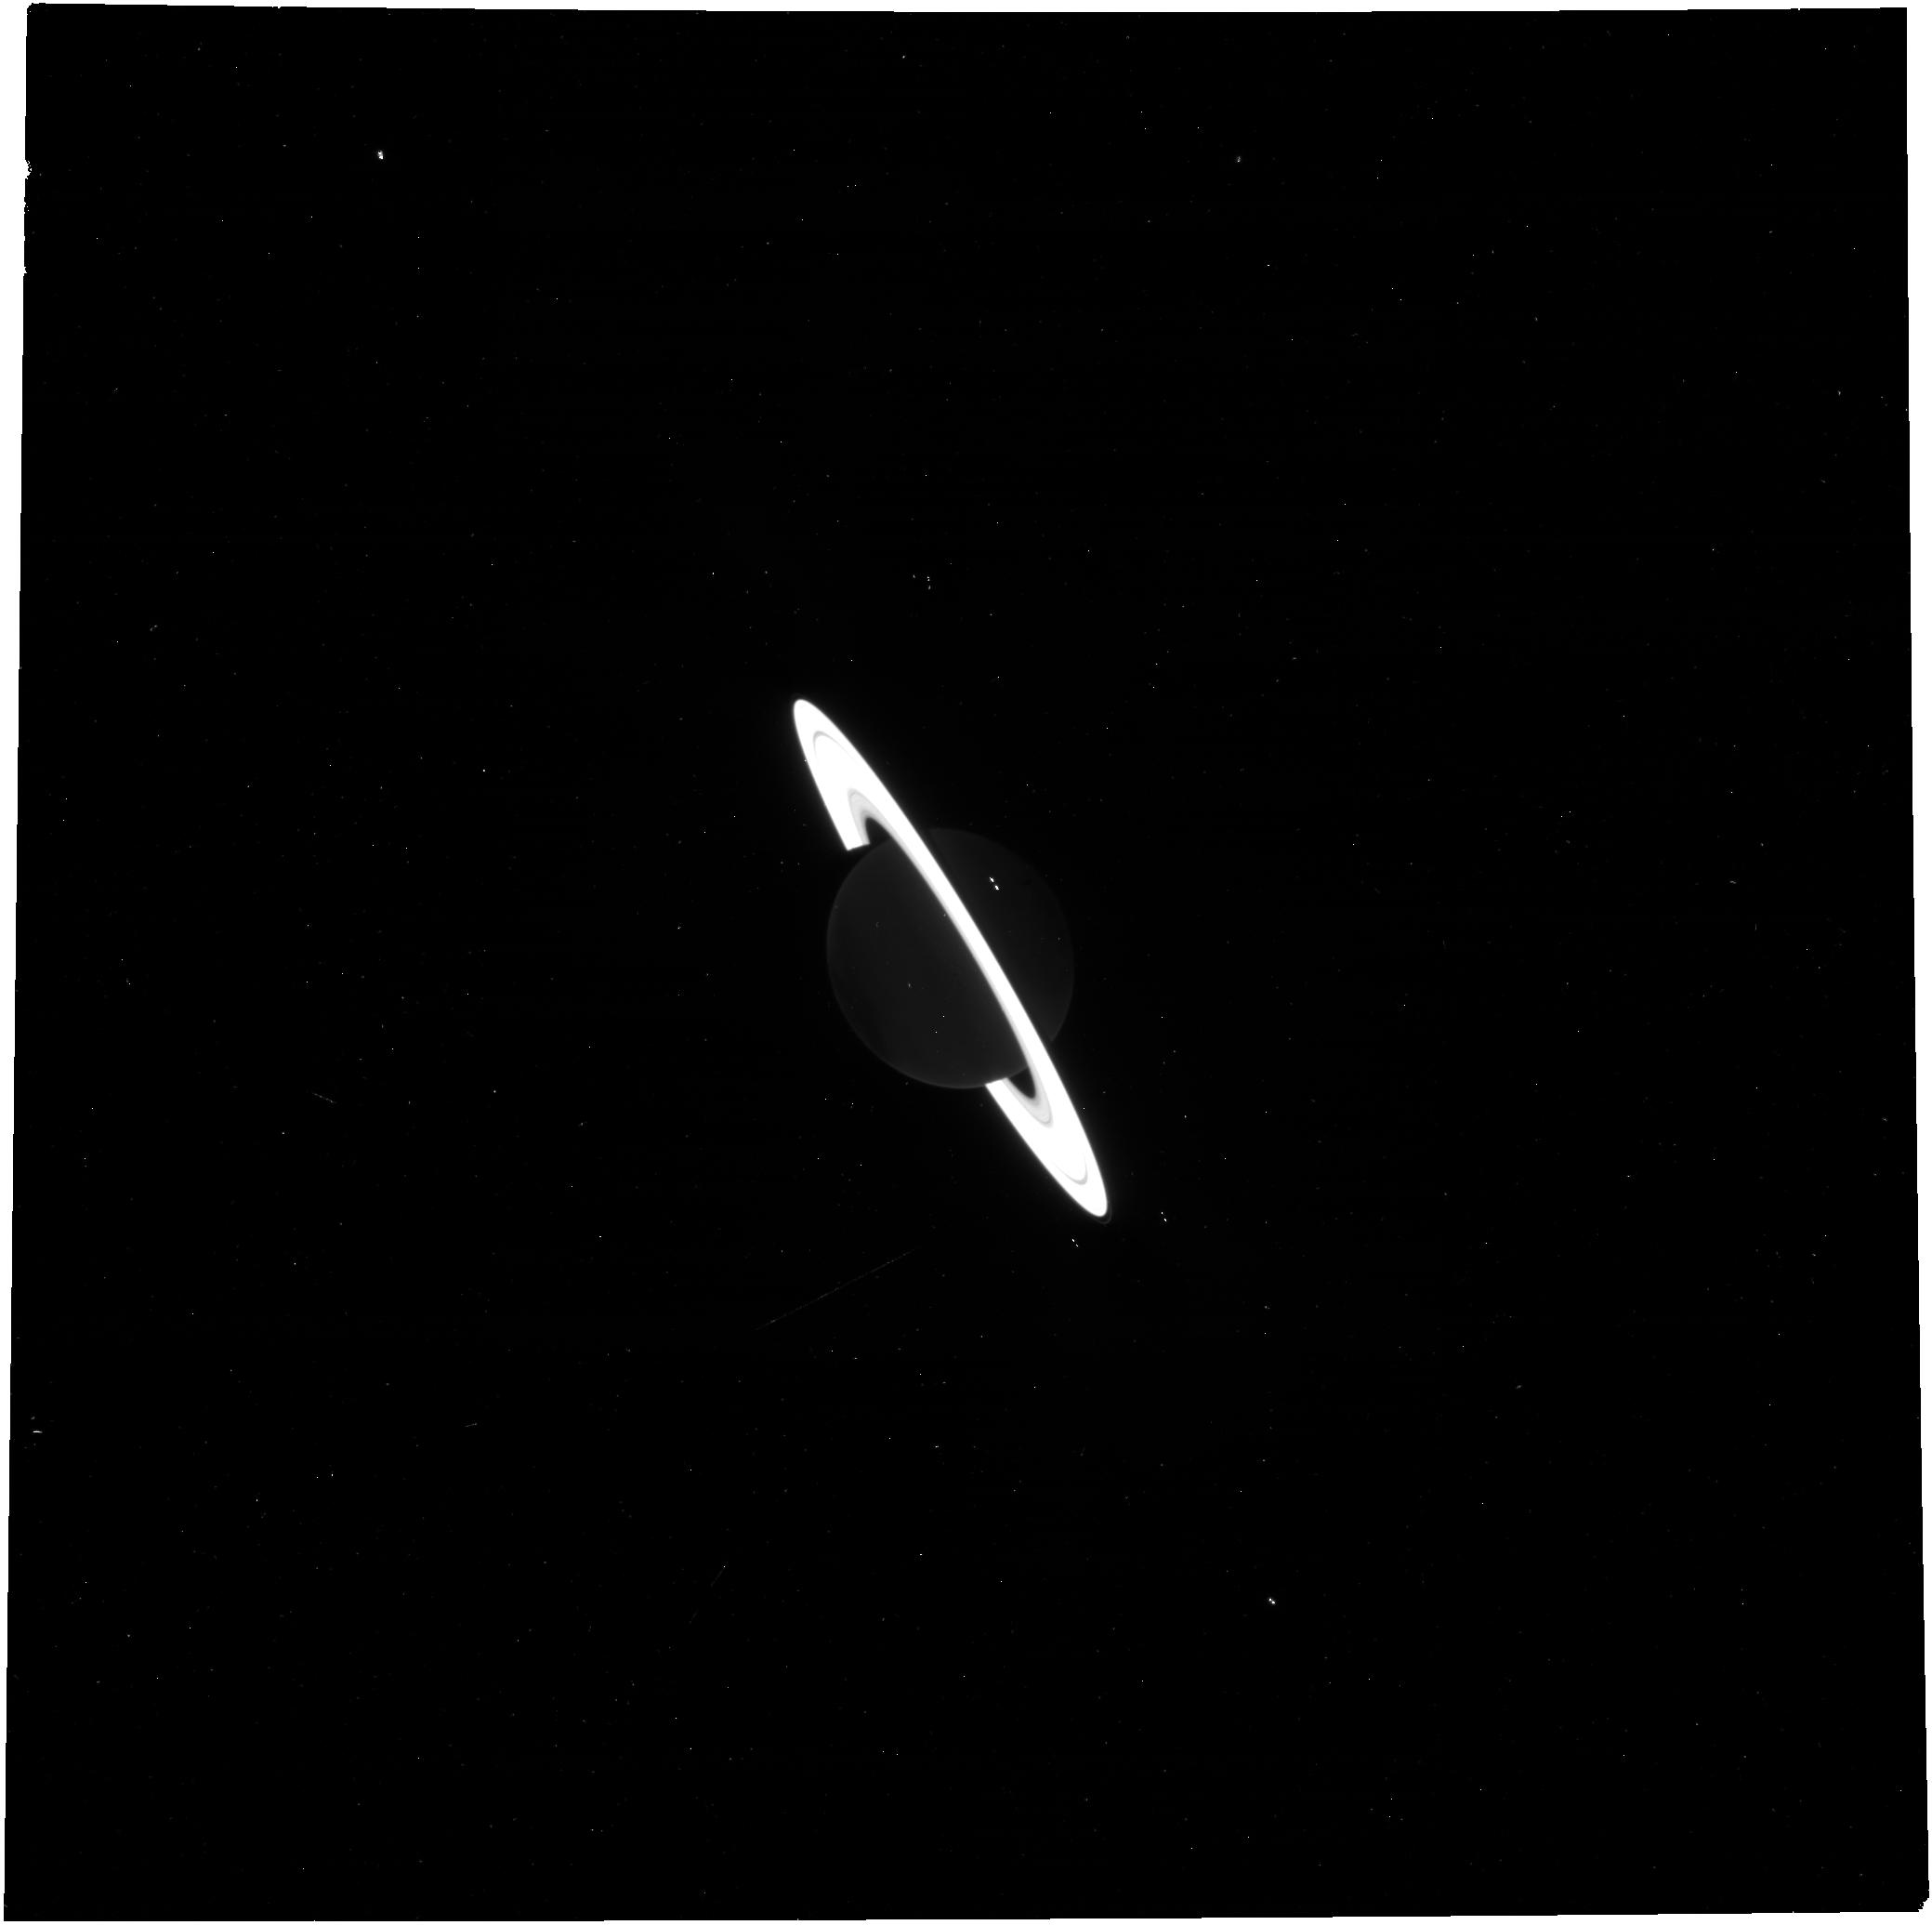 Arrivano le prime immagini JWST di Saturno